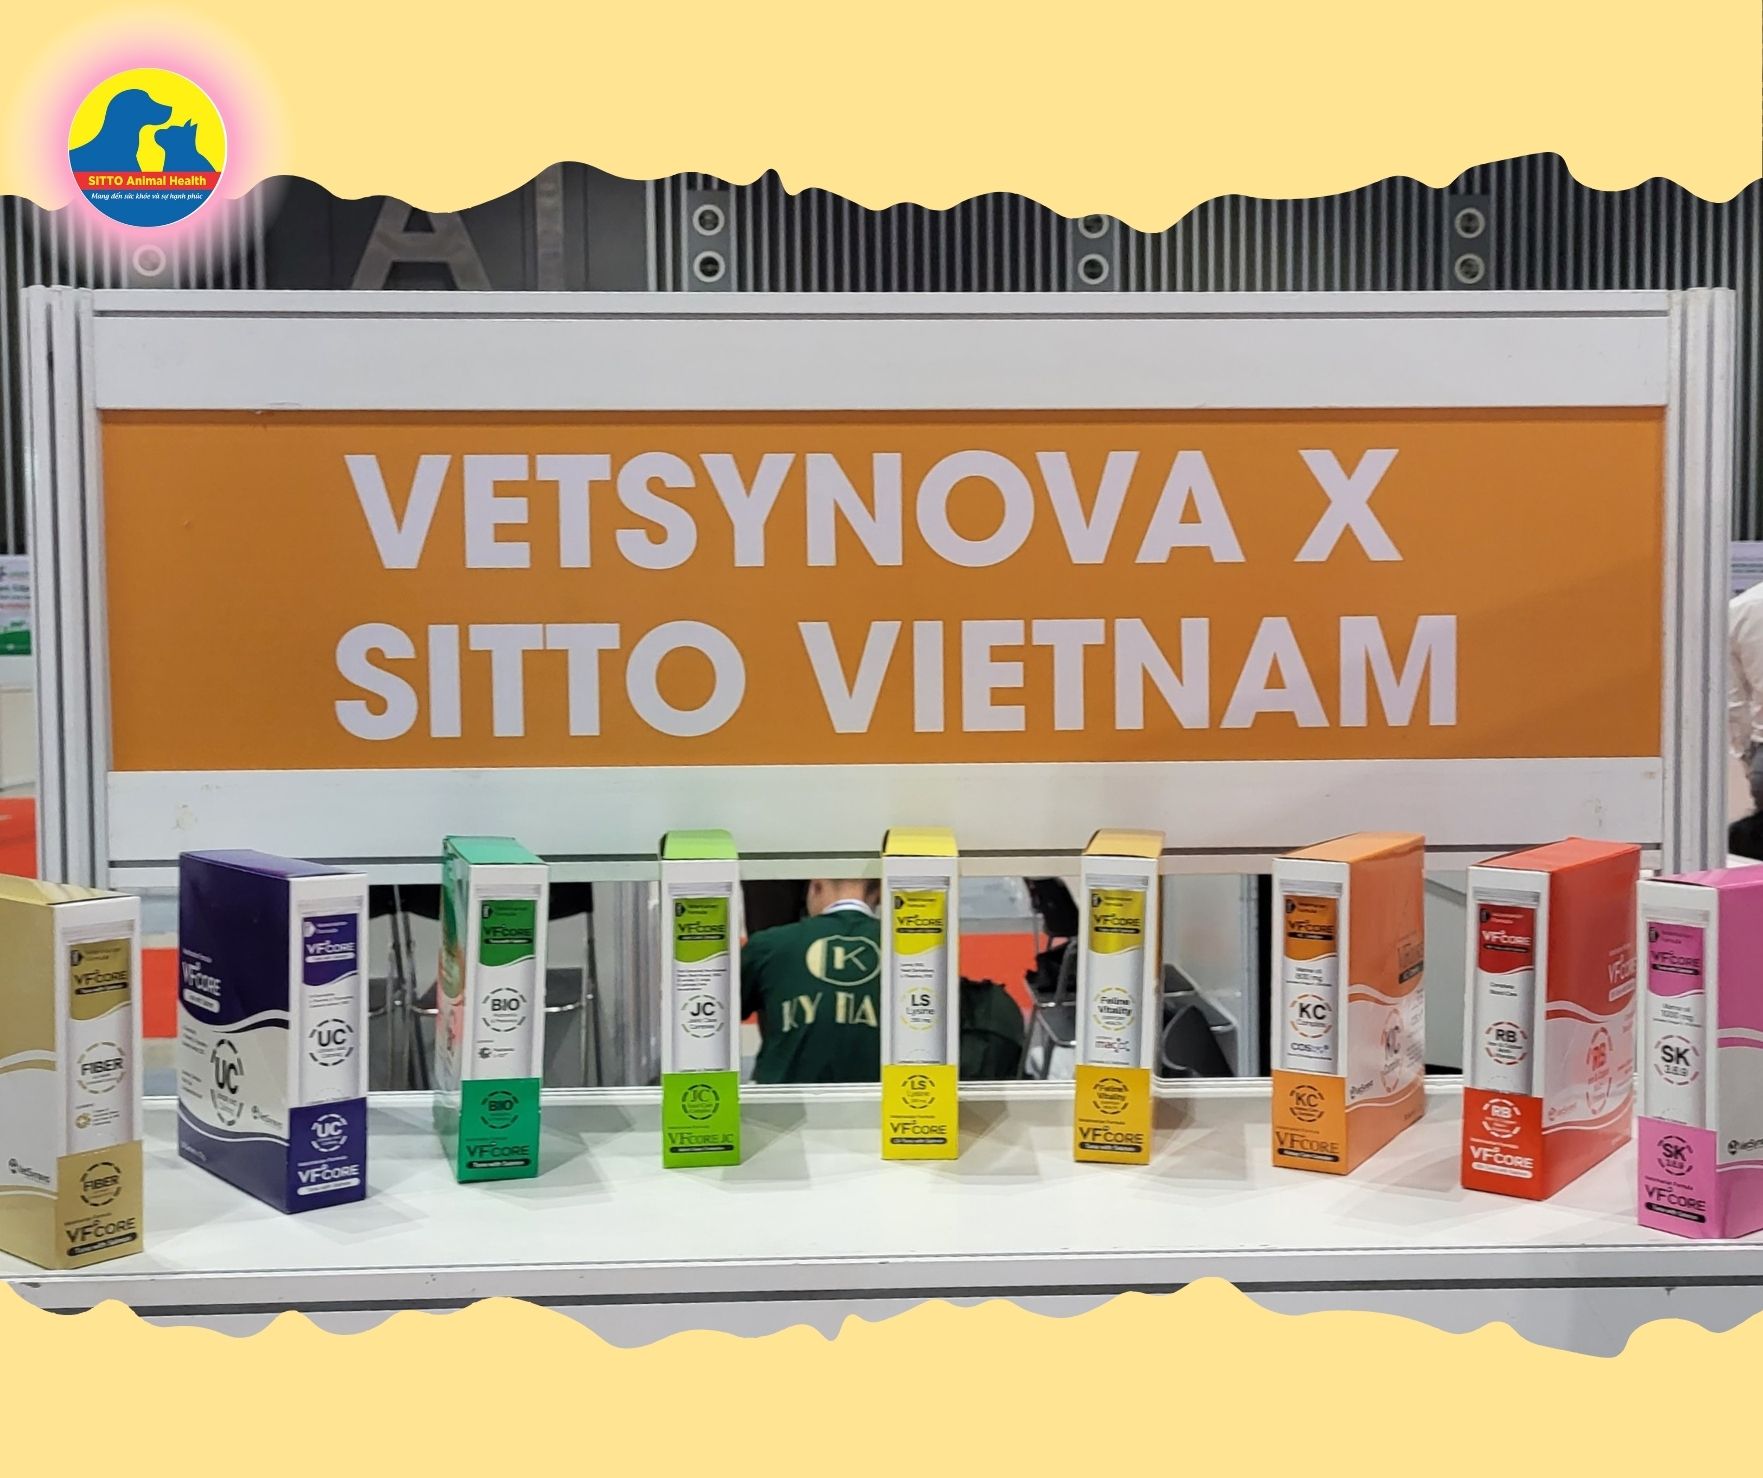 Gặp gỡ công ty VetSynova X Sitto Viet Nam